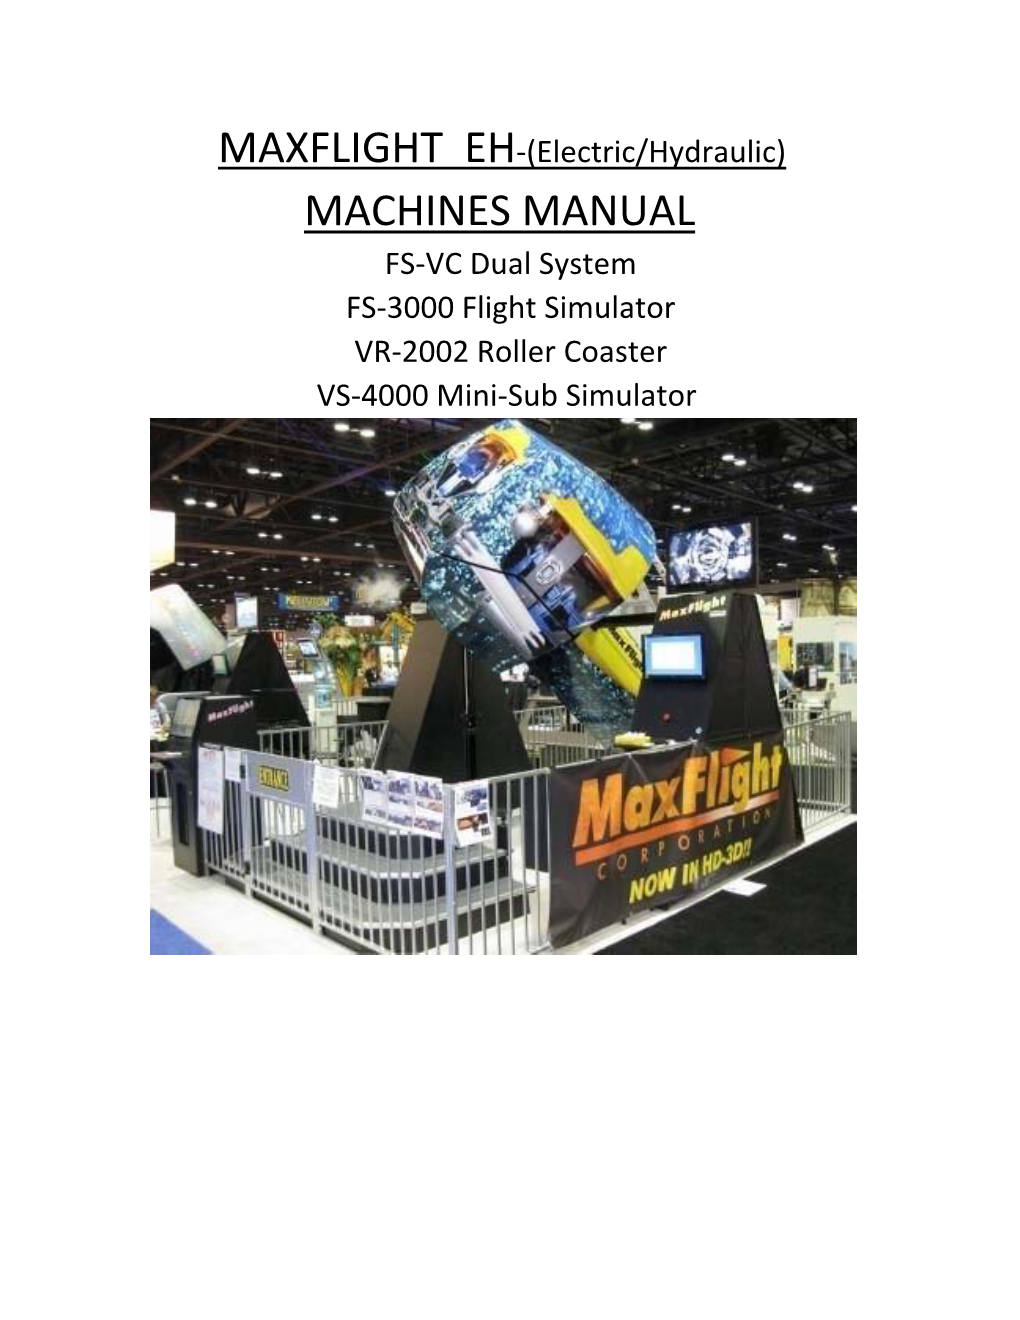 Machines Manual